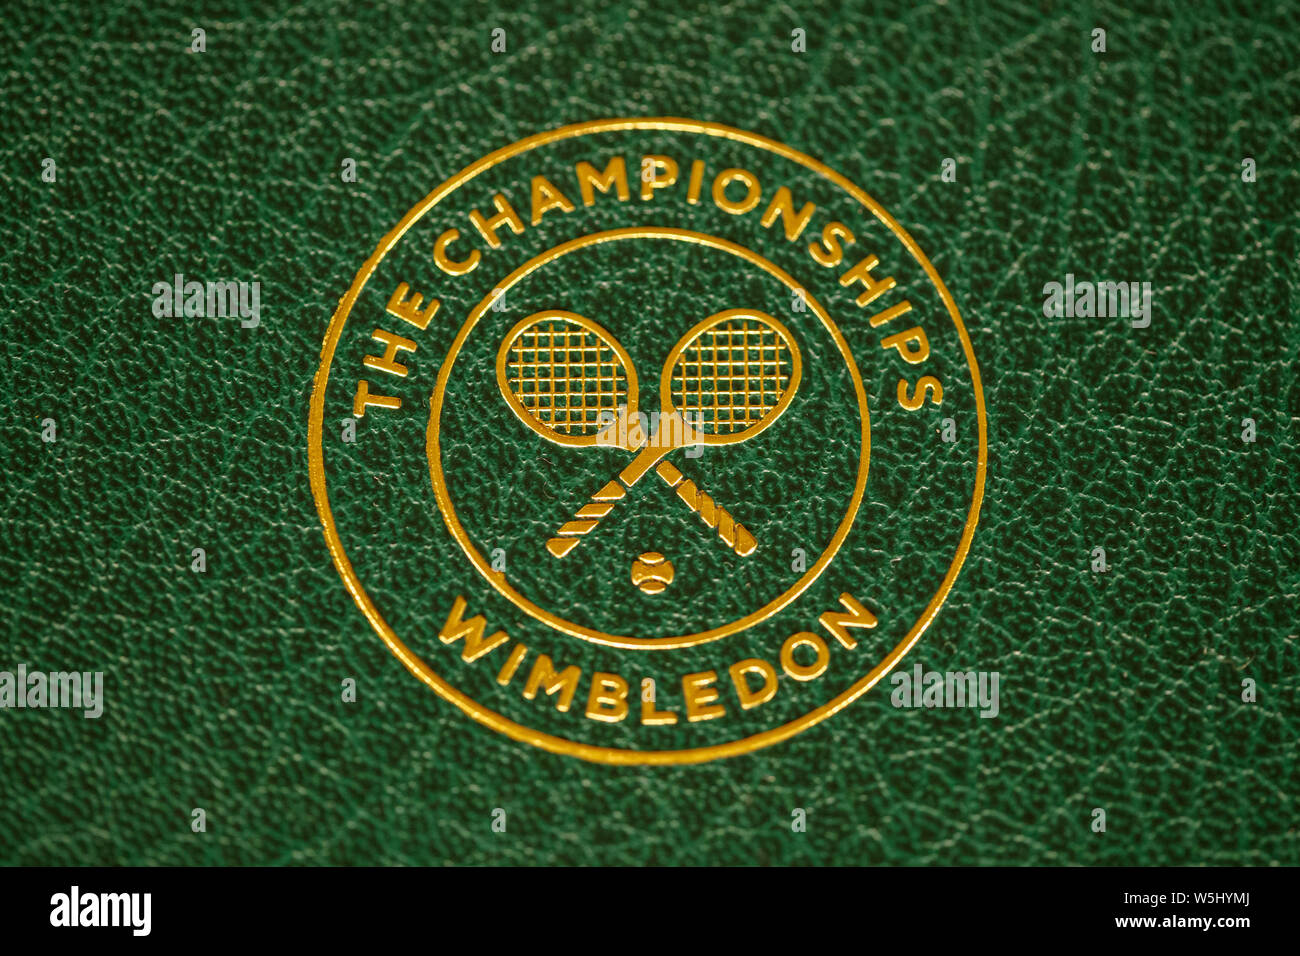 Logo sur le trophée de Wimbledon. Tenue à l'All England Lawn Tennis Club, Wimbledon Banque D'Images